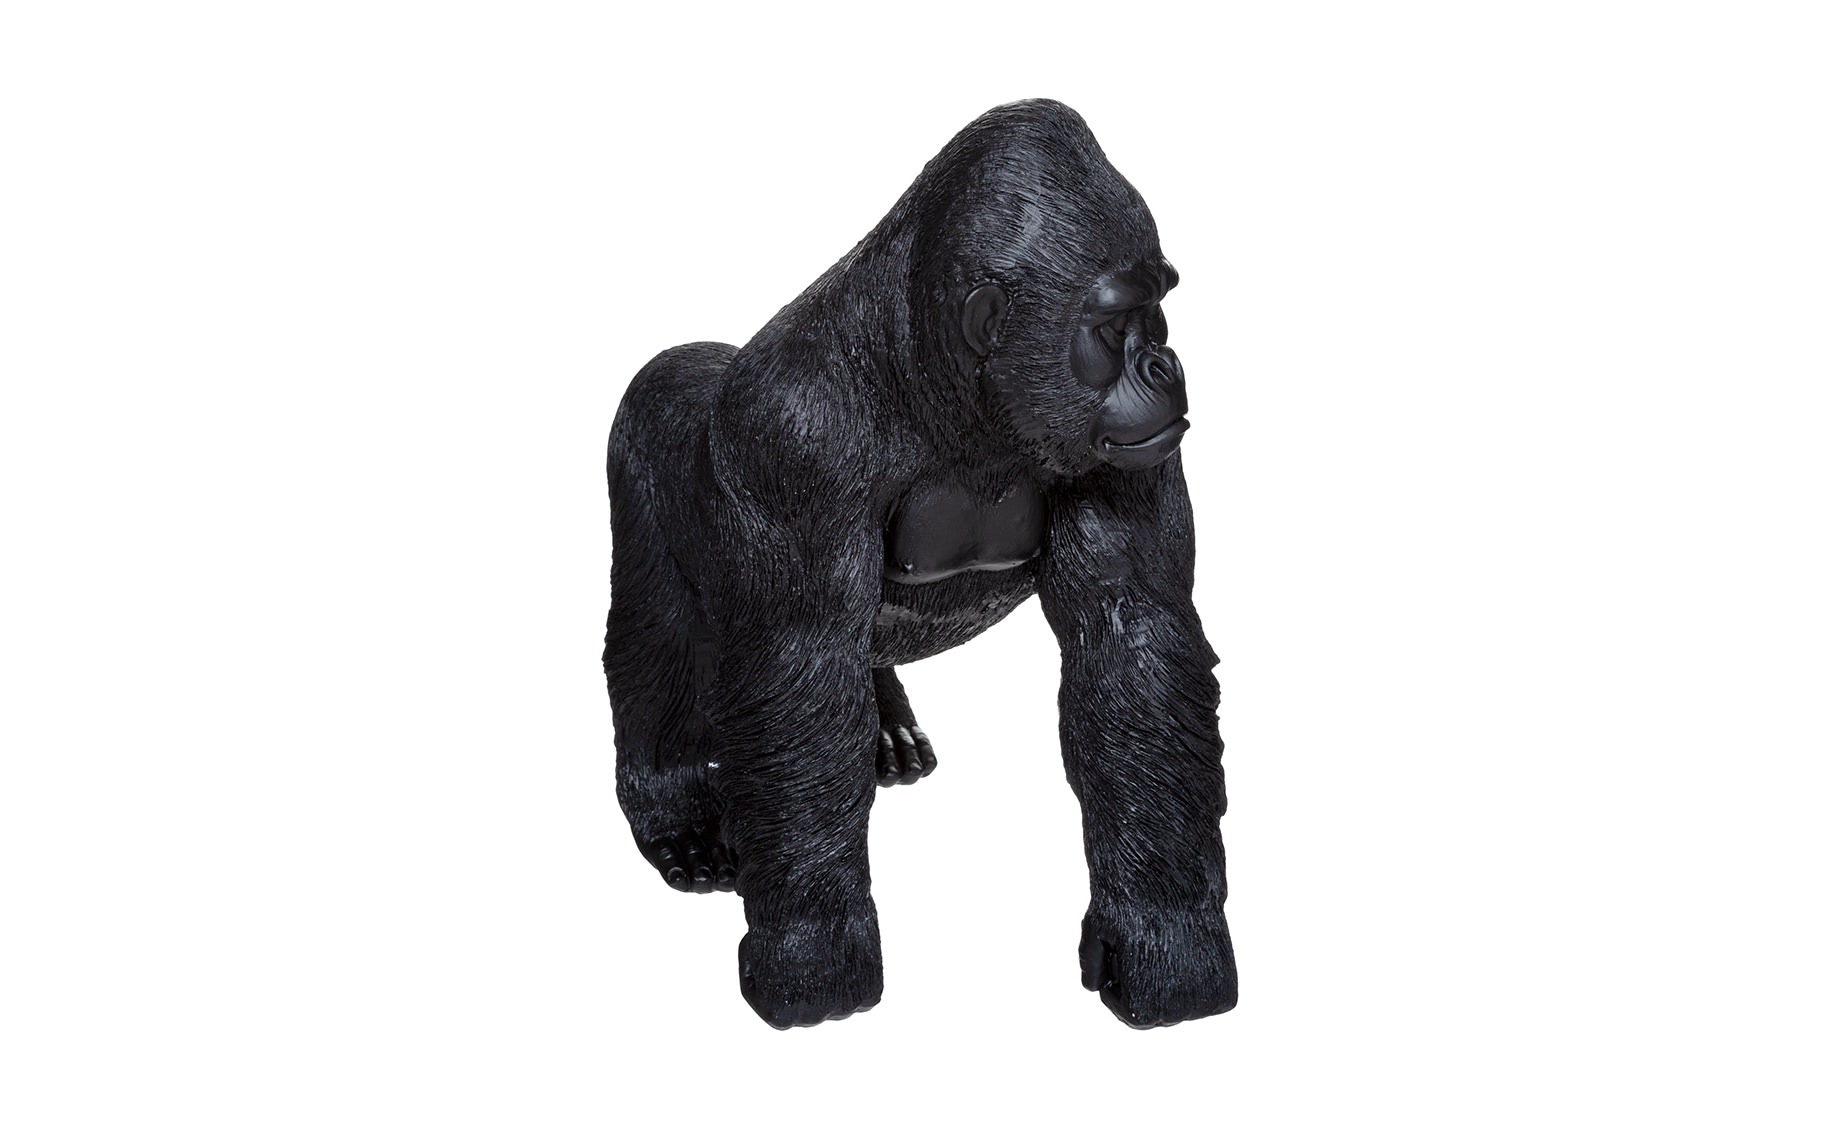 Dekoracija Gorilla H35cm